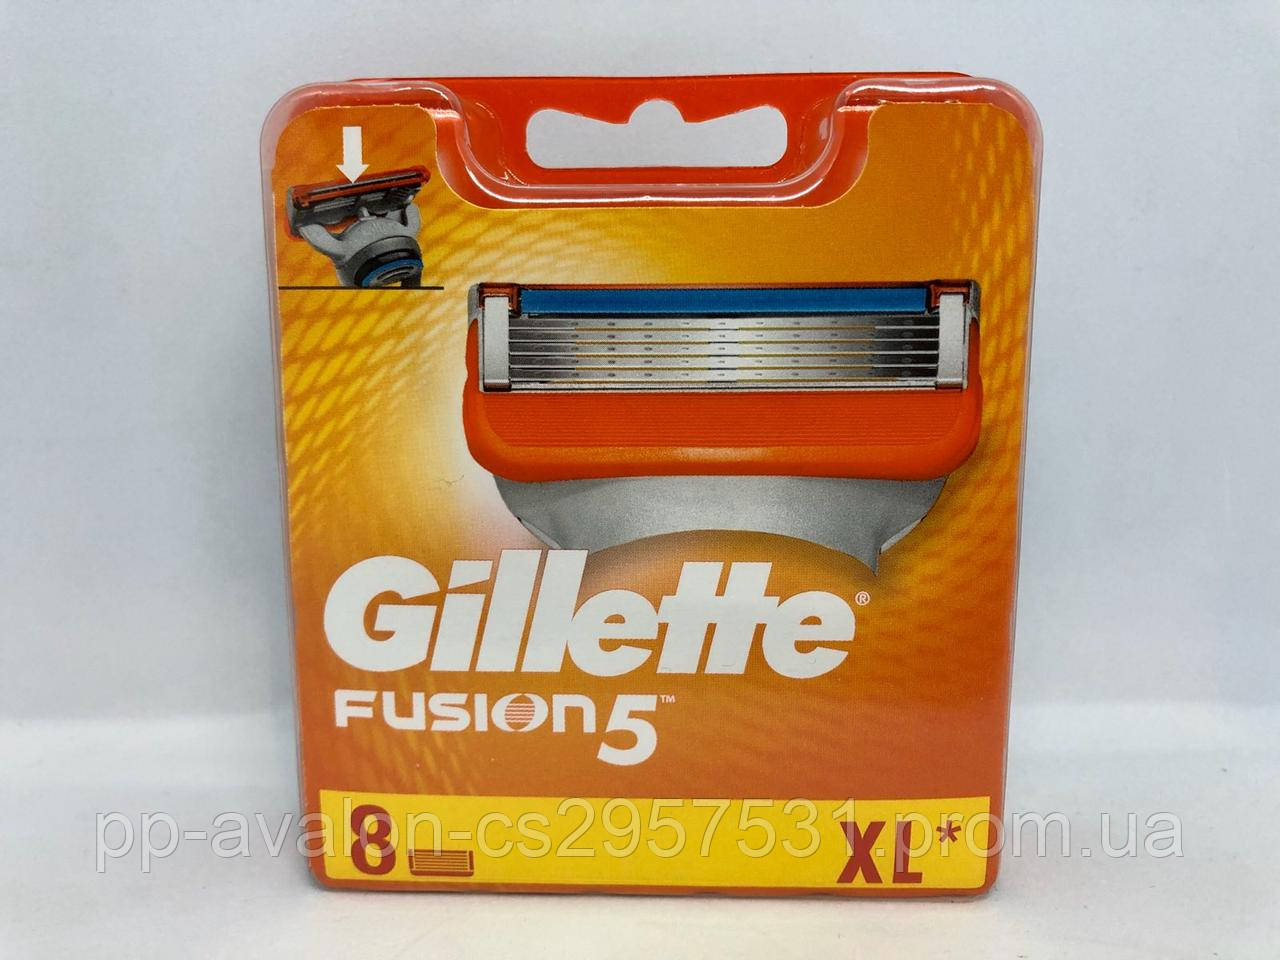 Касети для гоління Gillette Fusion 5 XL 8 шт Колумбія